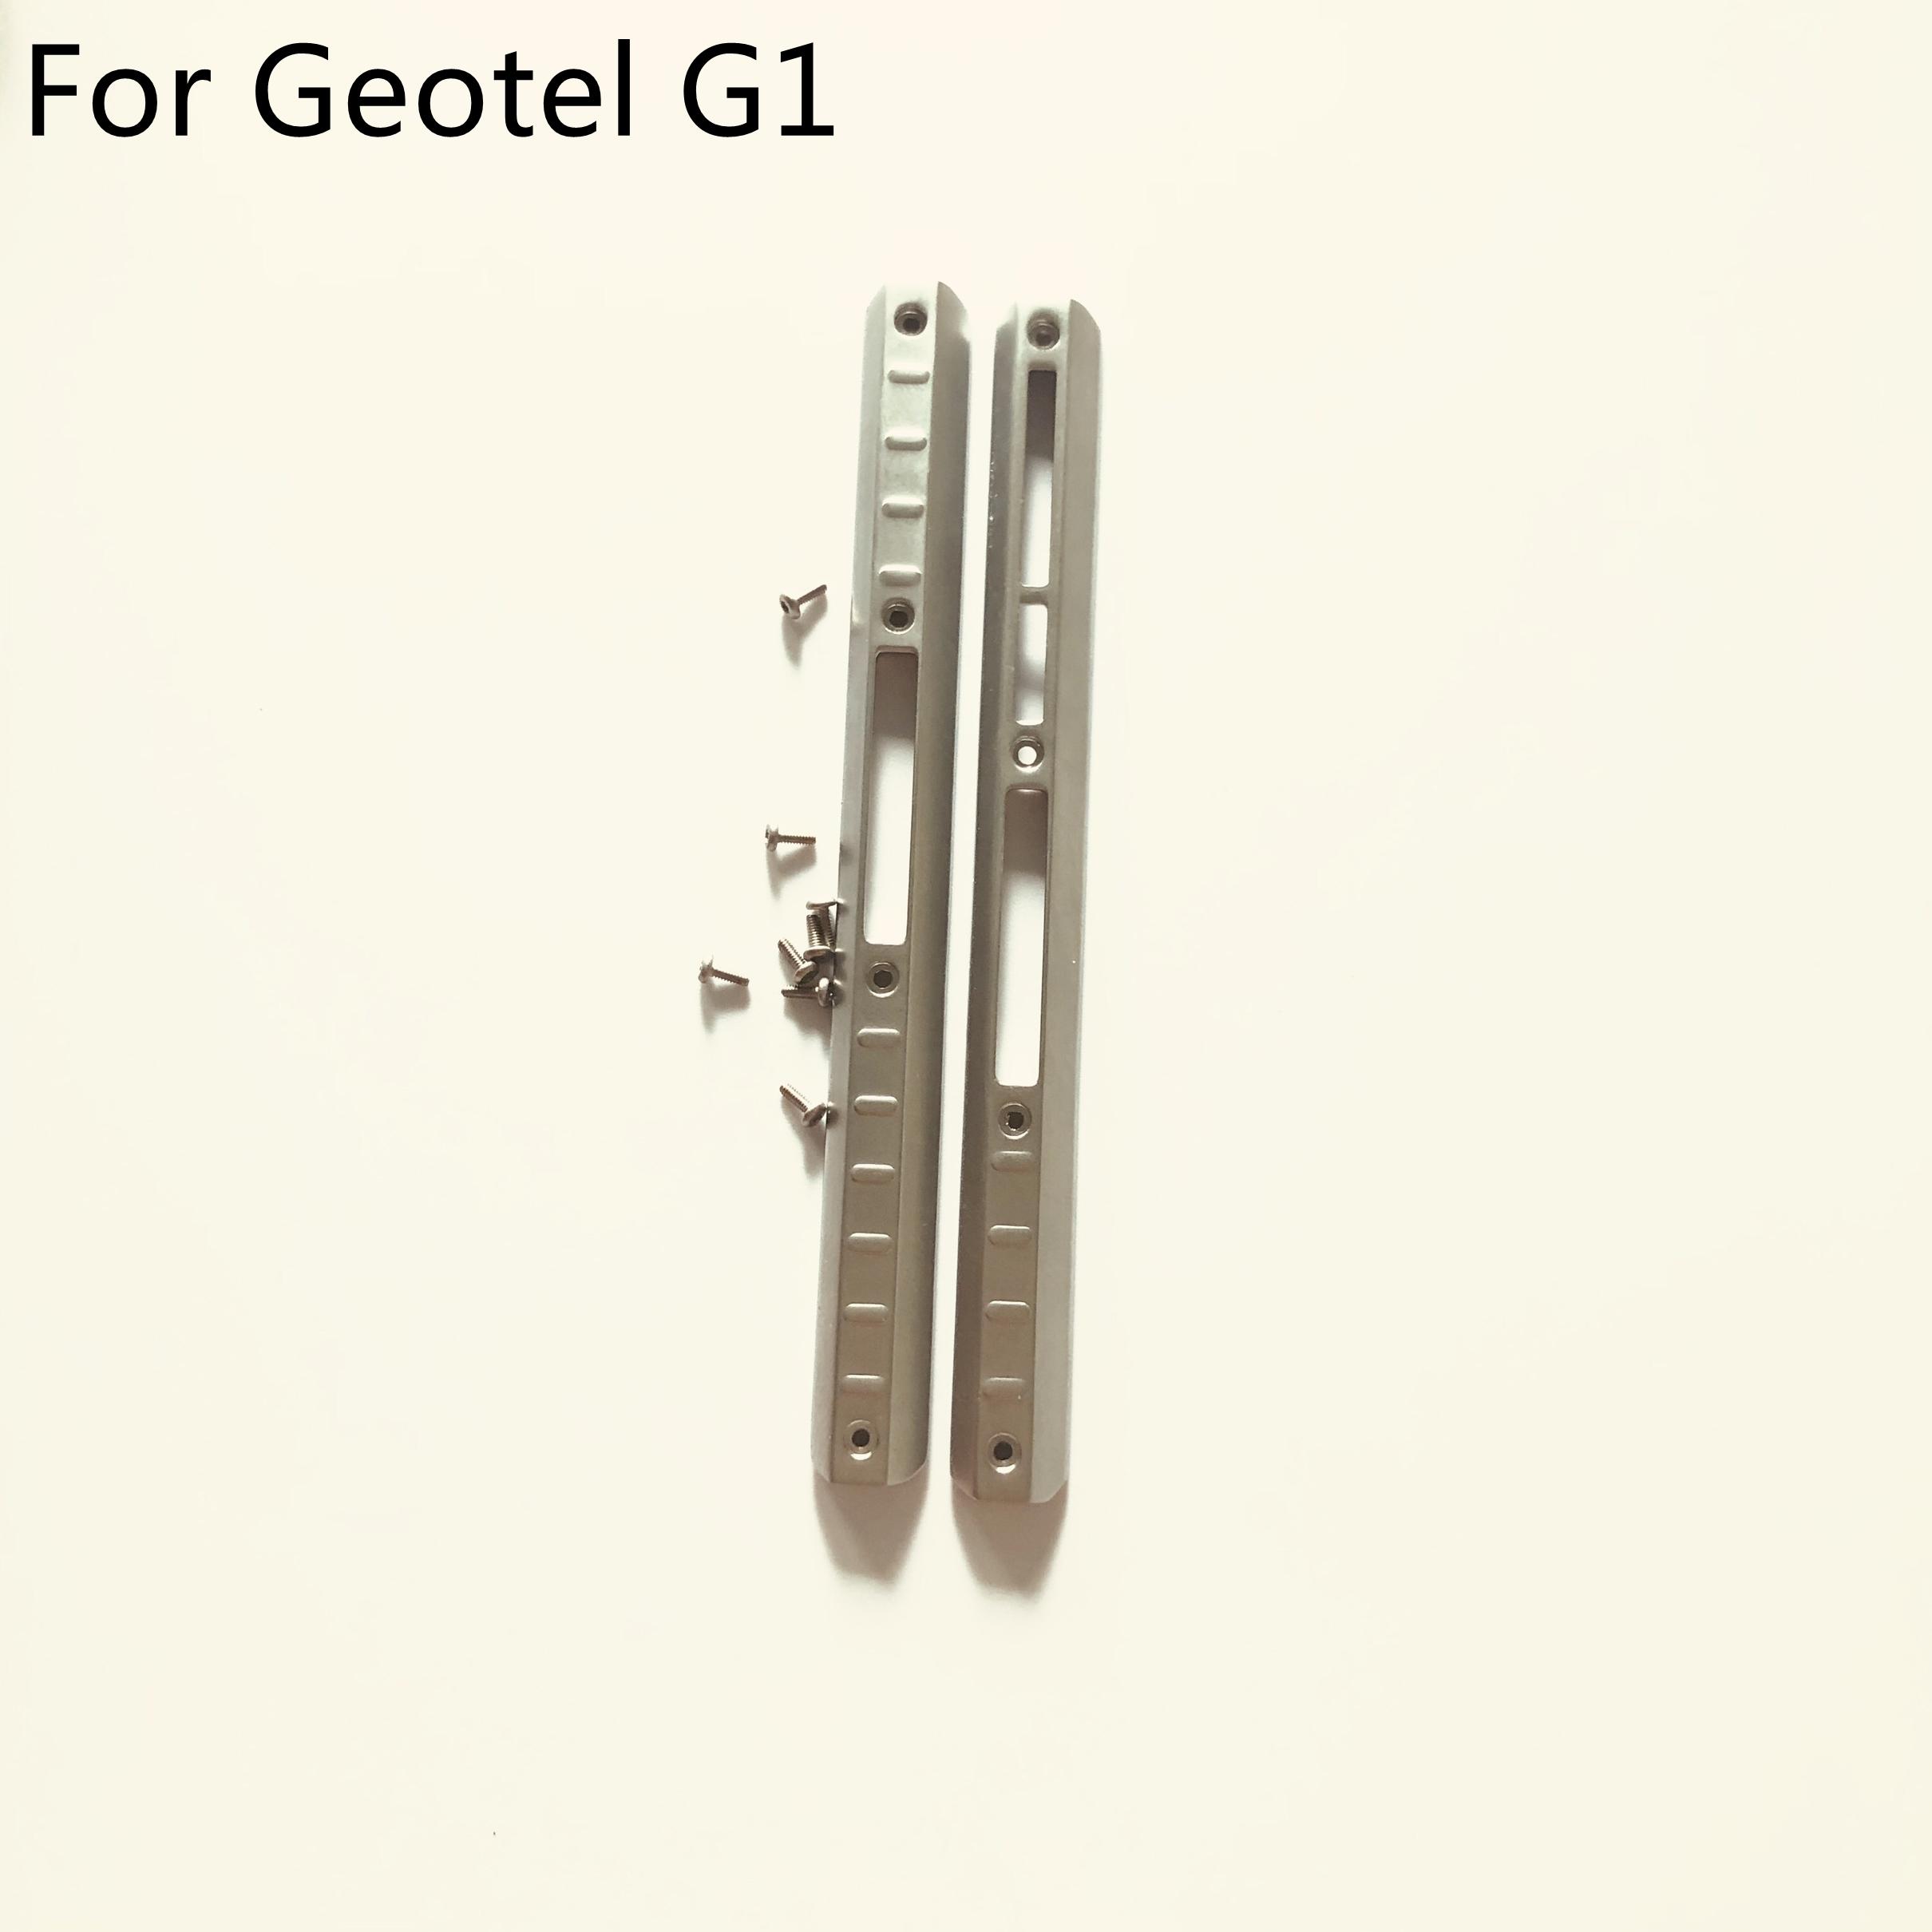 Изображение товара: Чехол для телефона Geotel G1, б/у, с боковой обрезкой и винтами, для Geotel G1 MTK6580A Quad Core 5,0 дюйма 1280x720, бесплатная доставка